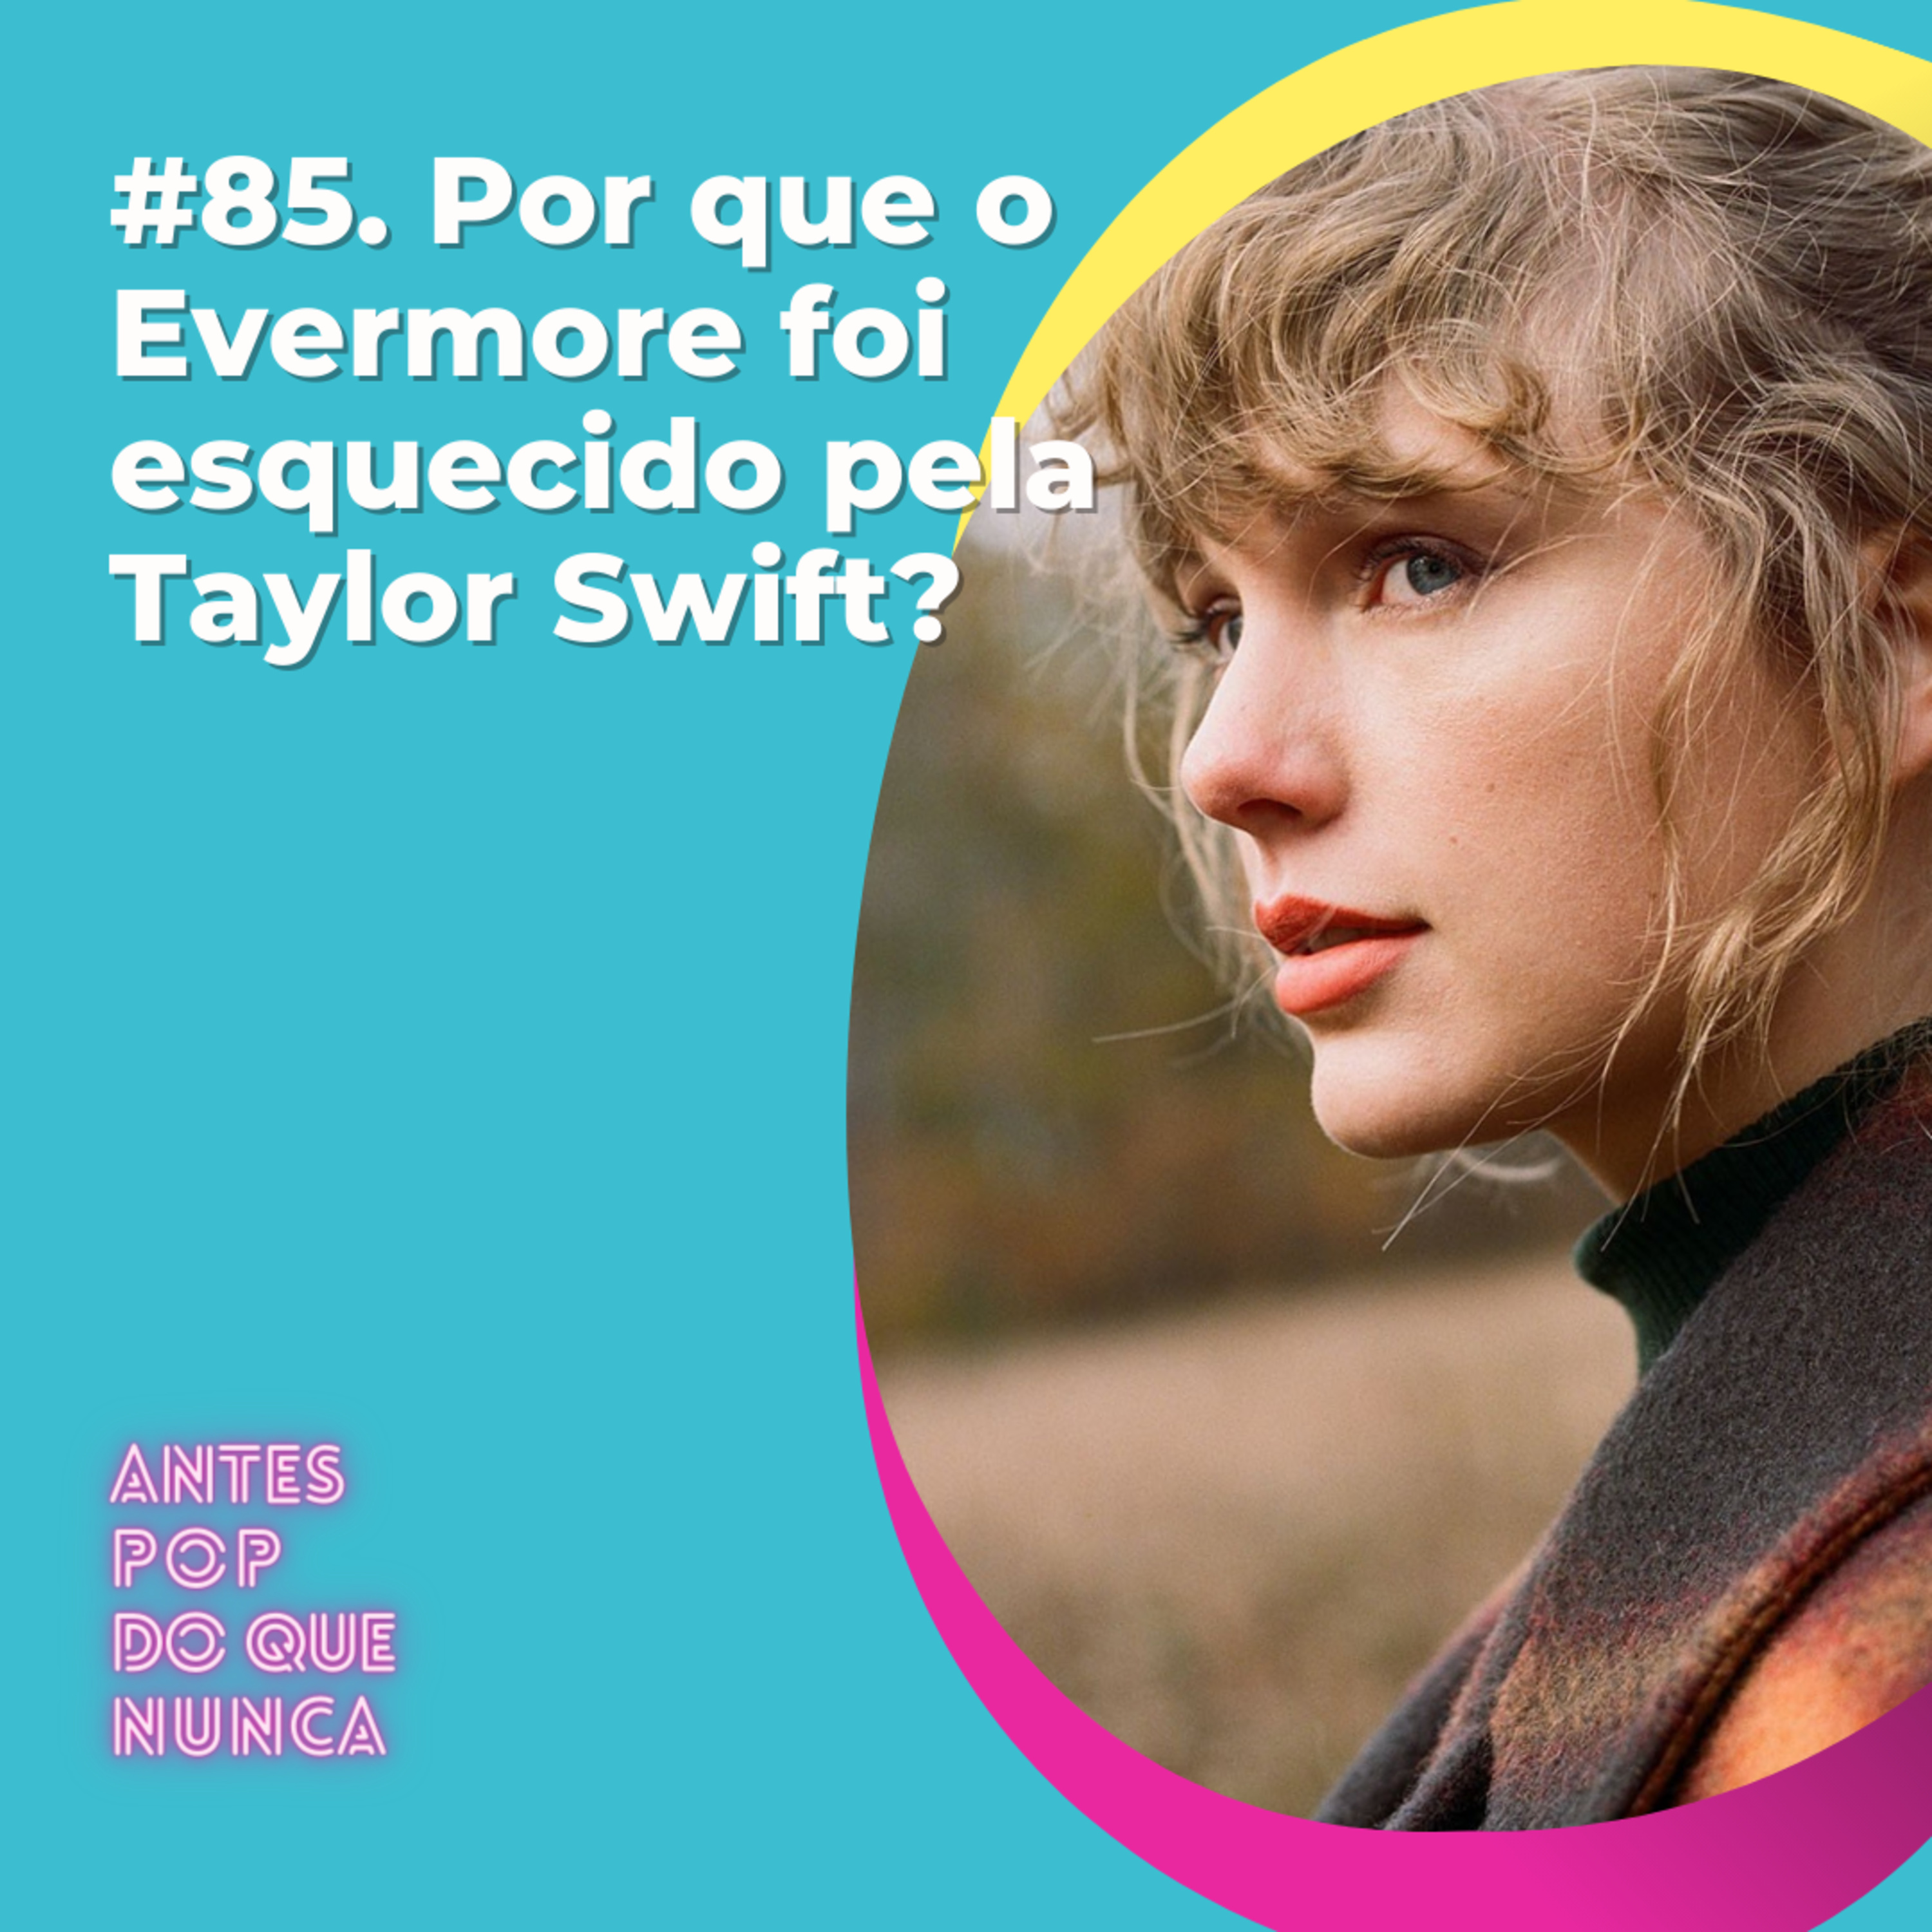 #85. Por que o Evermore foi esquecido pela Taylor Swift?